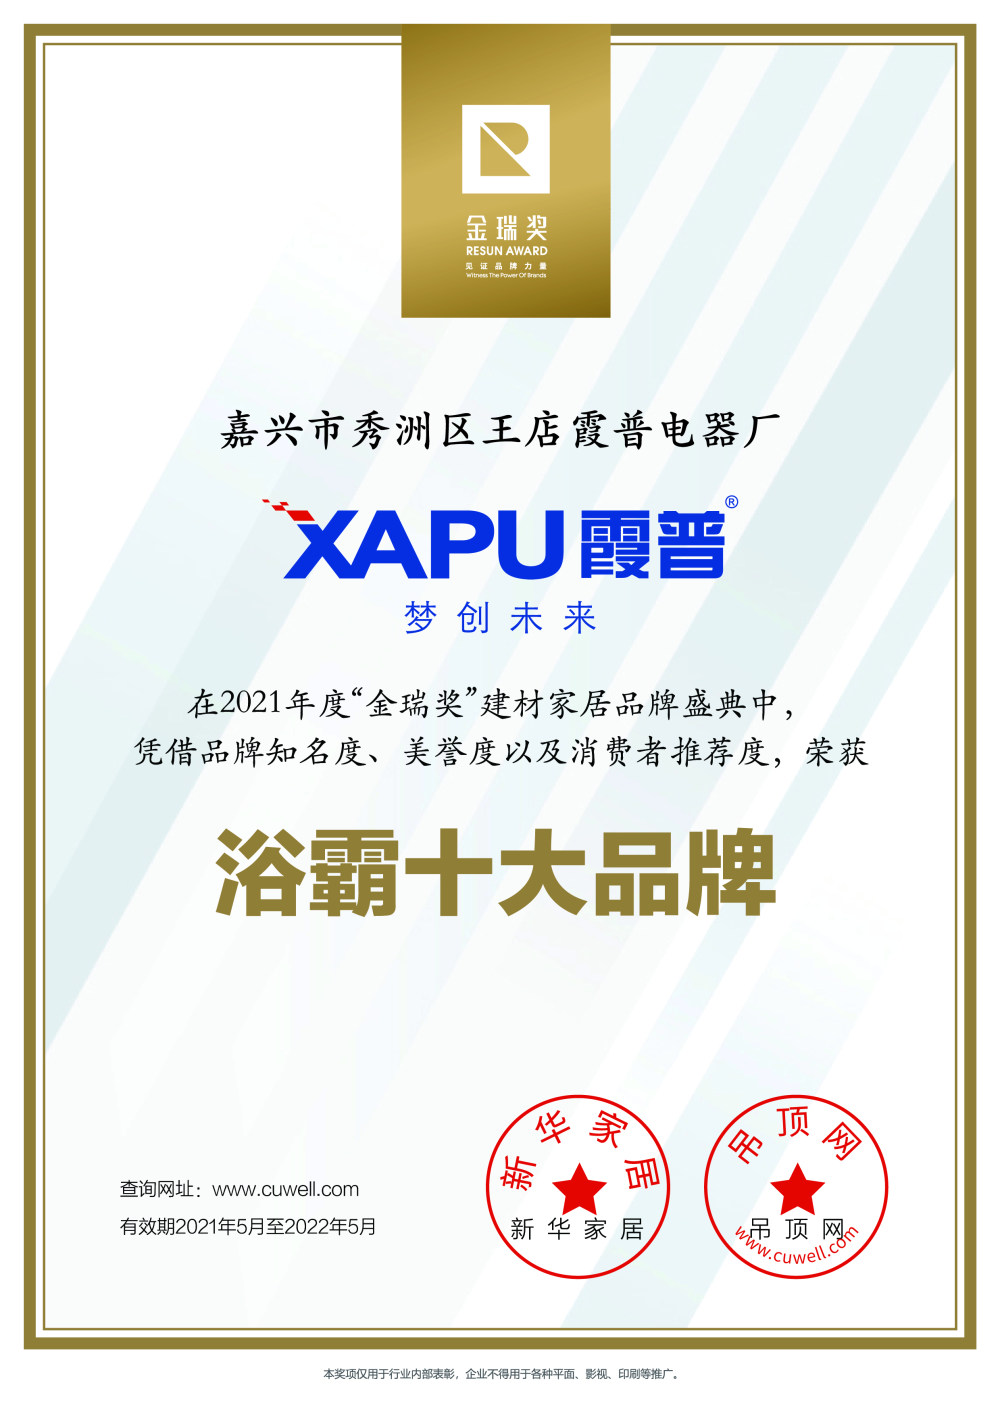 霞普“2021年度浴霸十大品牌”证书